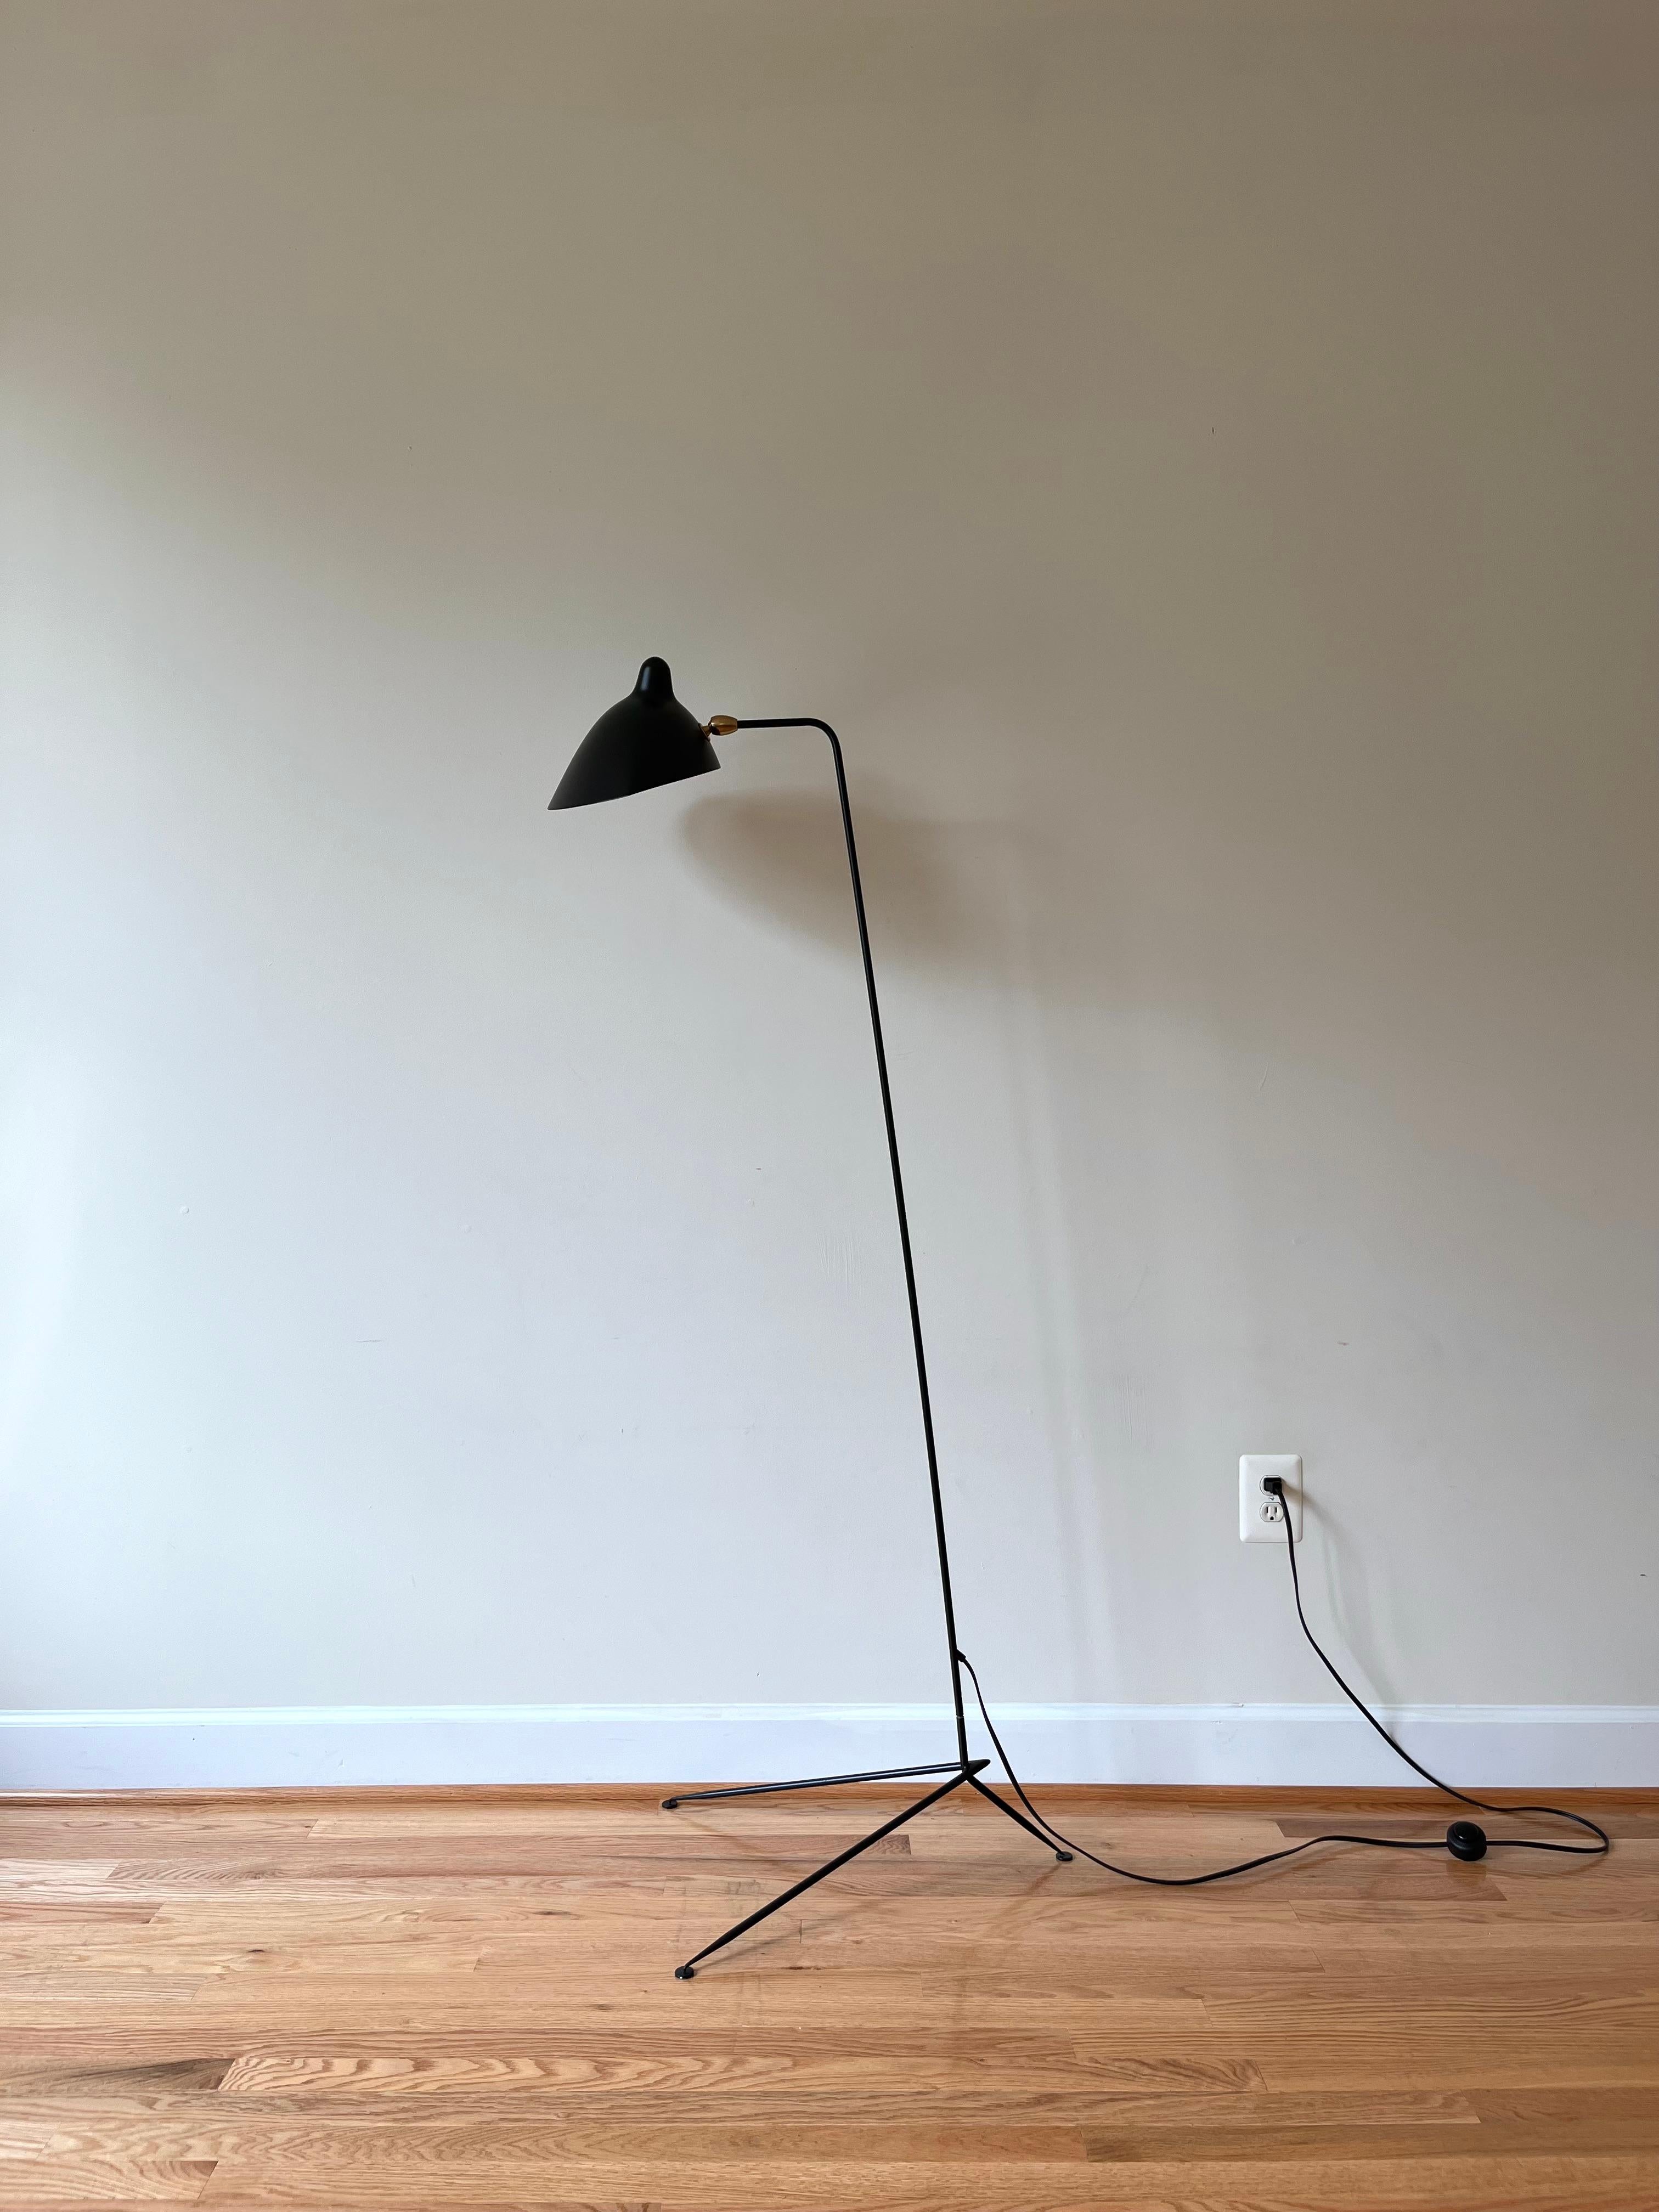 Le lampadaire de Serge Mouille (1952) a une esthétique cinétique et sculpturale qui évoque une sensation de mouvement dans l'espace. Tous les signes distinctifs de Mouille sont présents : la forme sensuelle du réflecteur, la maîtrise du travail du